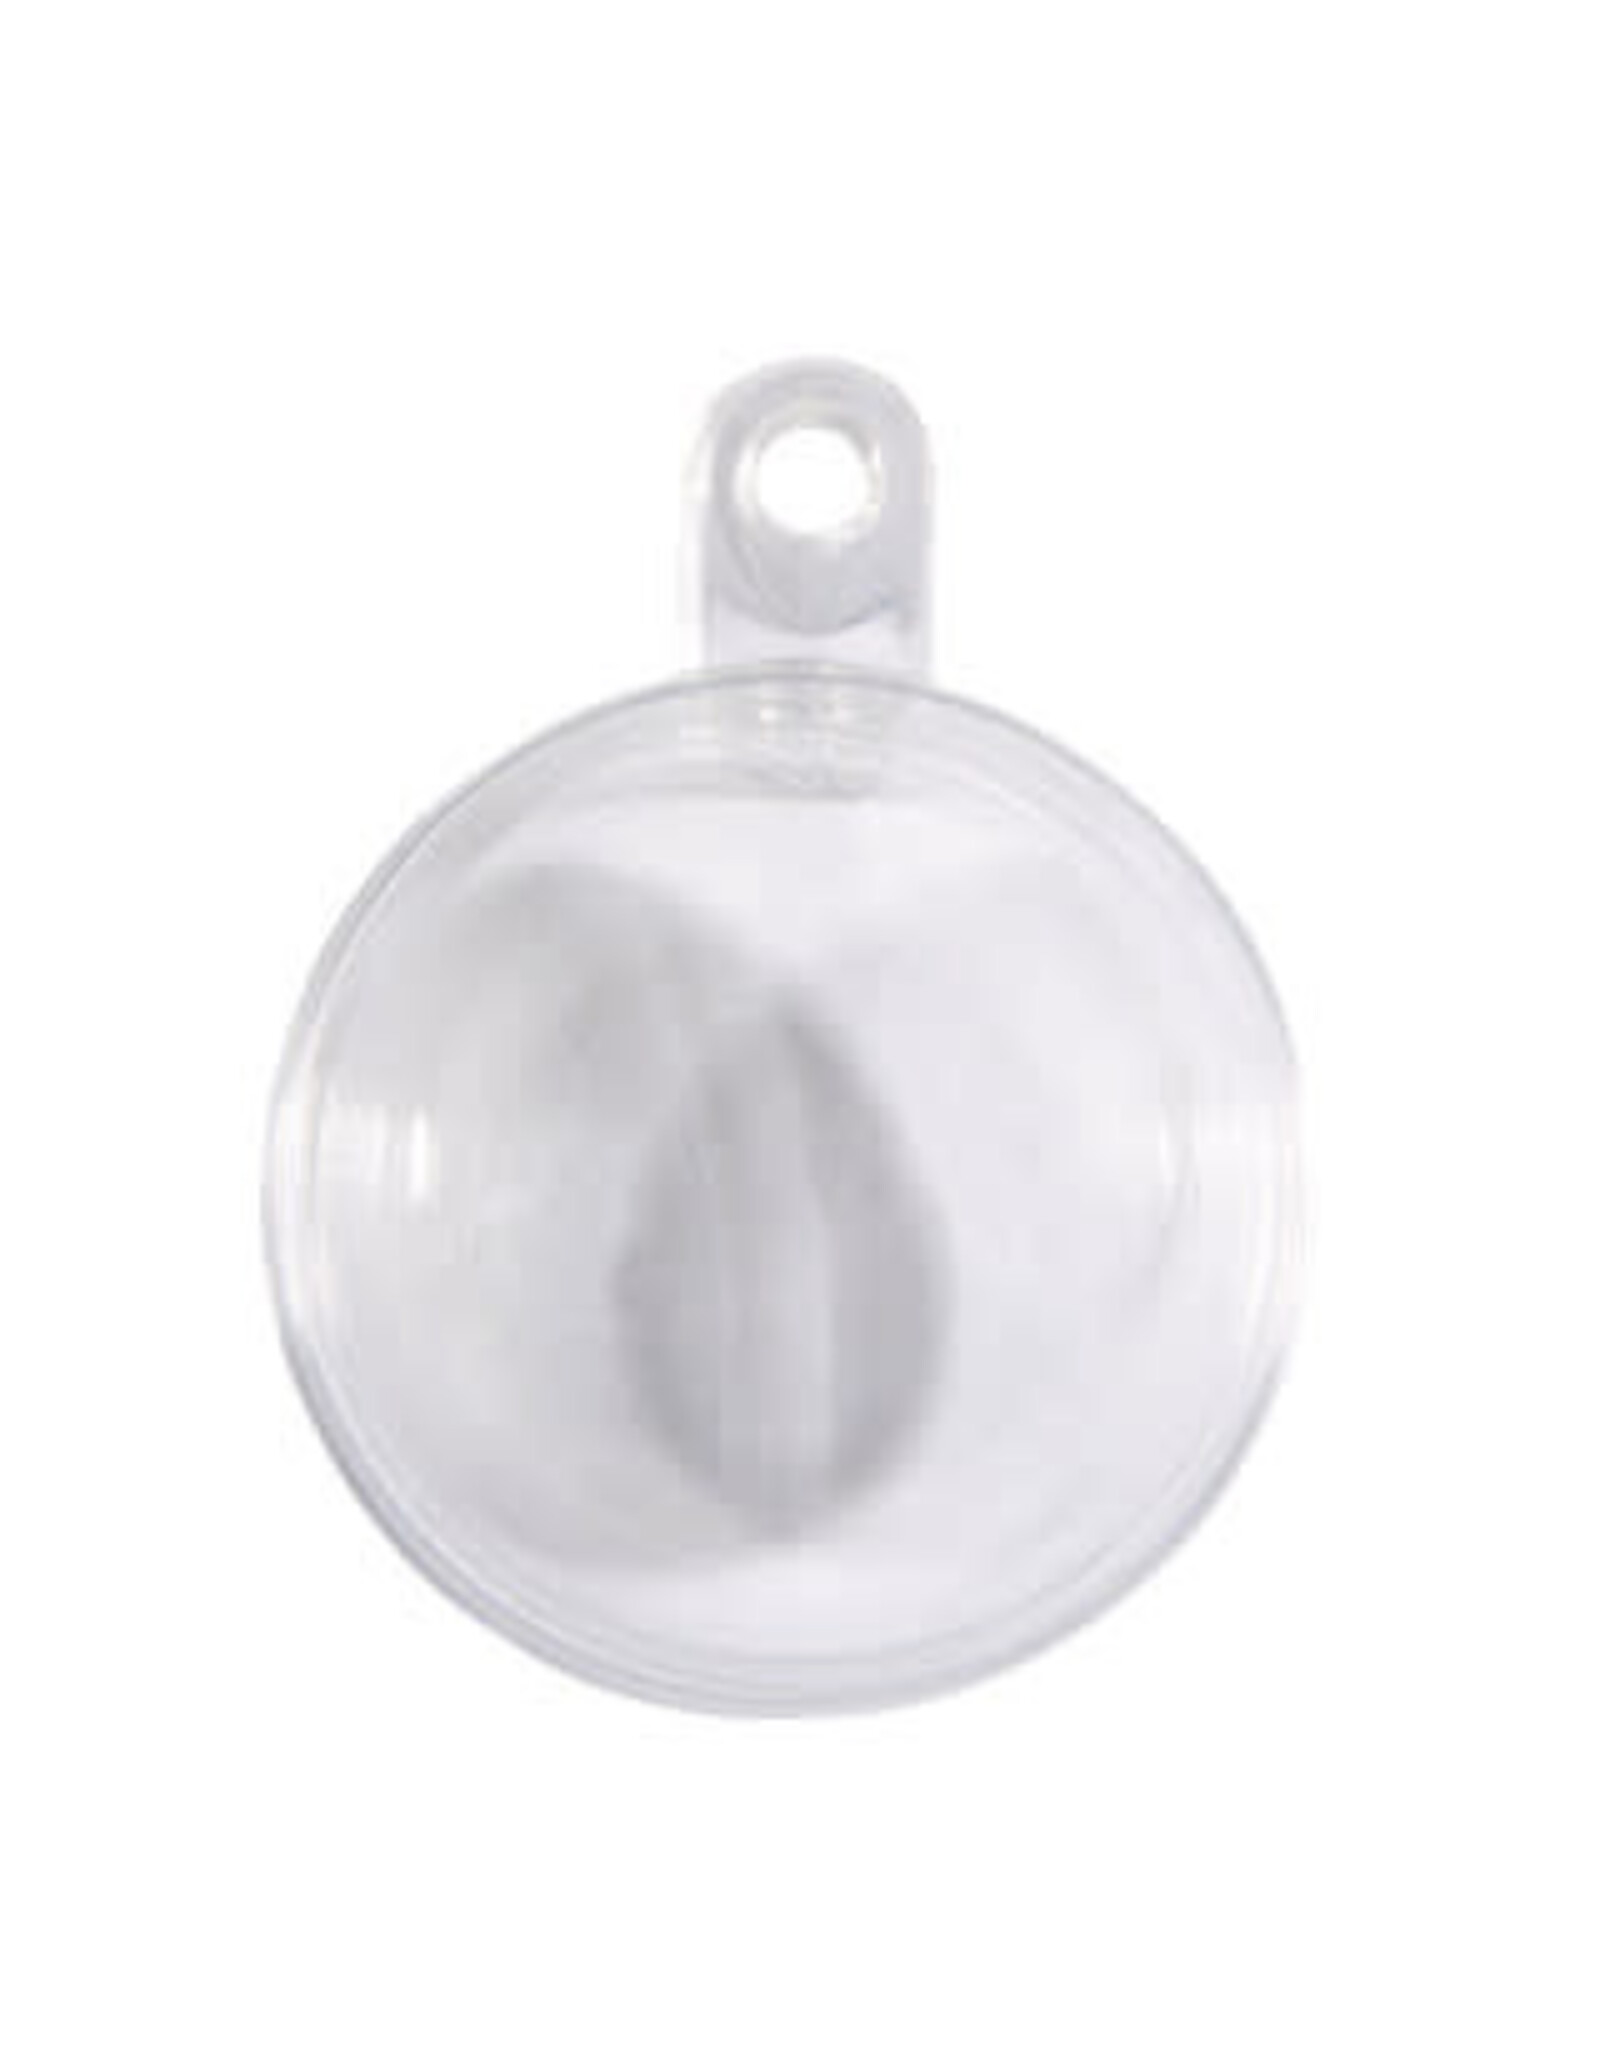 Rayher Boule transparente en plastique 8cm